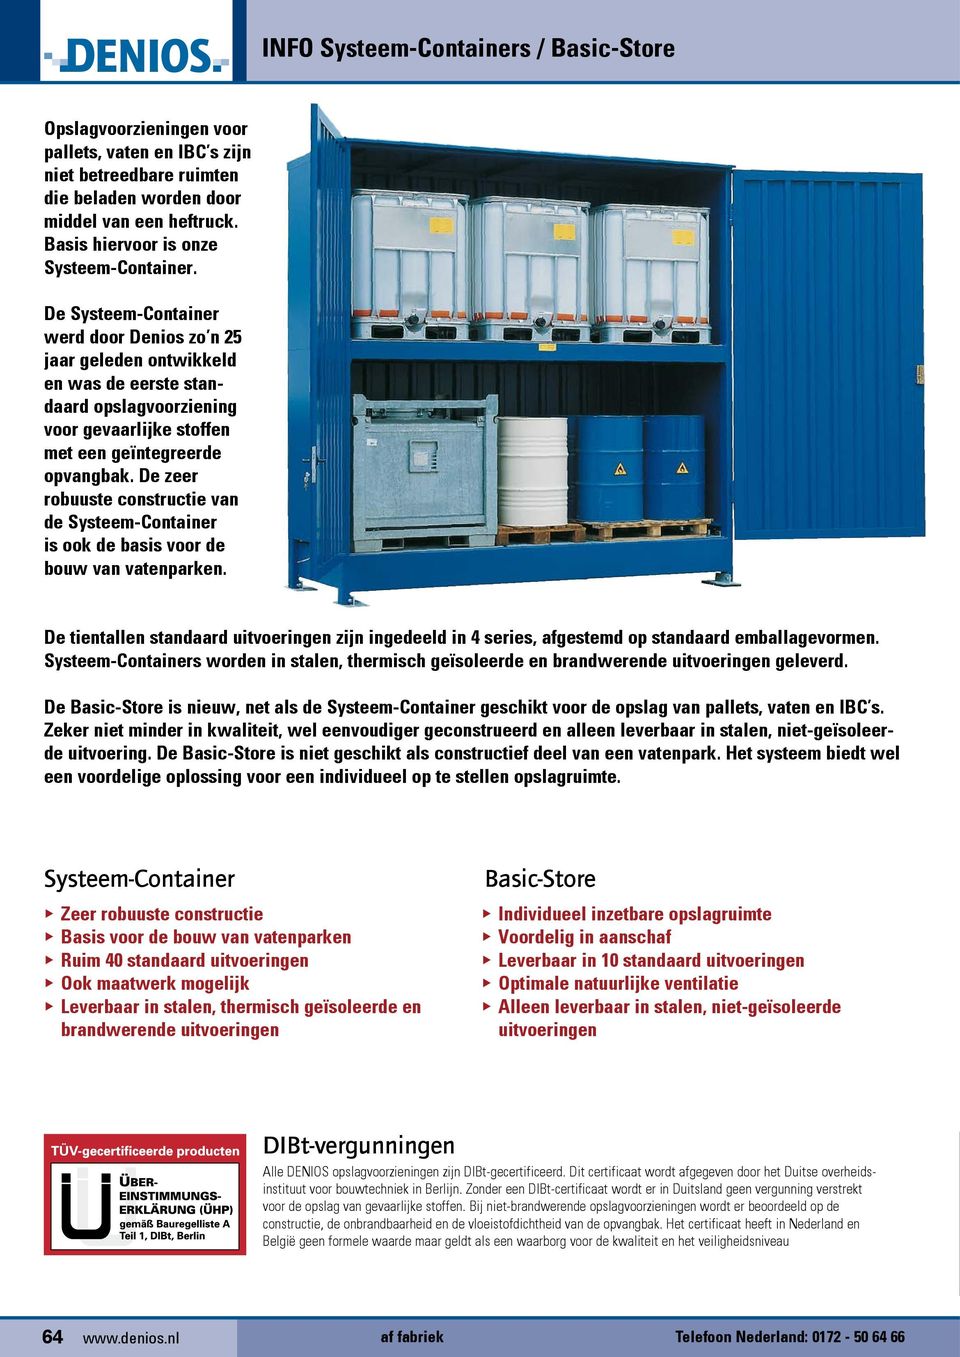 De Systeem-Container werd door Denios zo n 25 jaar geleden ontwikkeld en was de eerste standaard opslagvoorziening voor gevaarlijke stoffen met een geïntegreerde opvangbak.